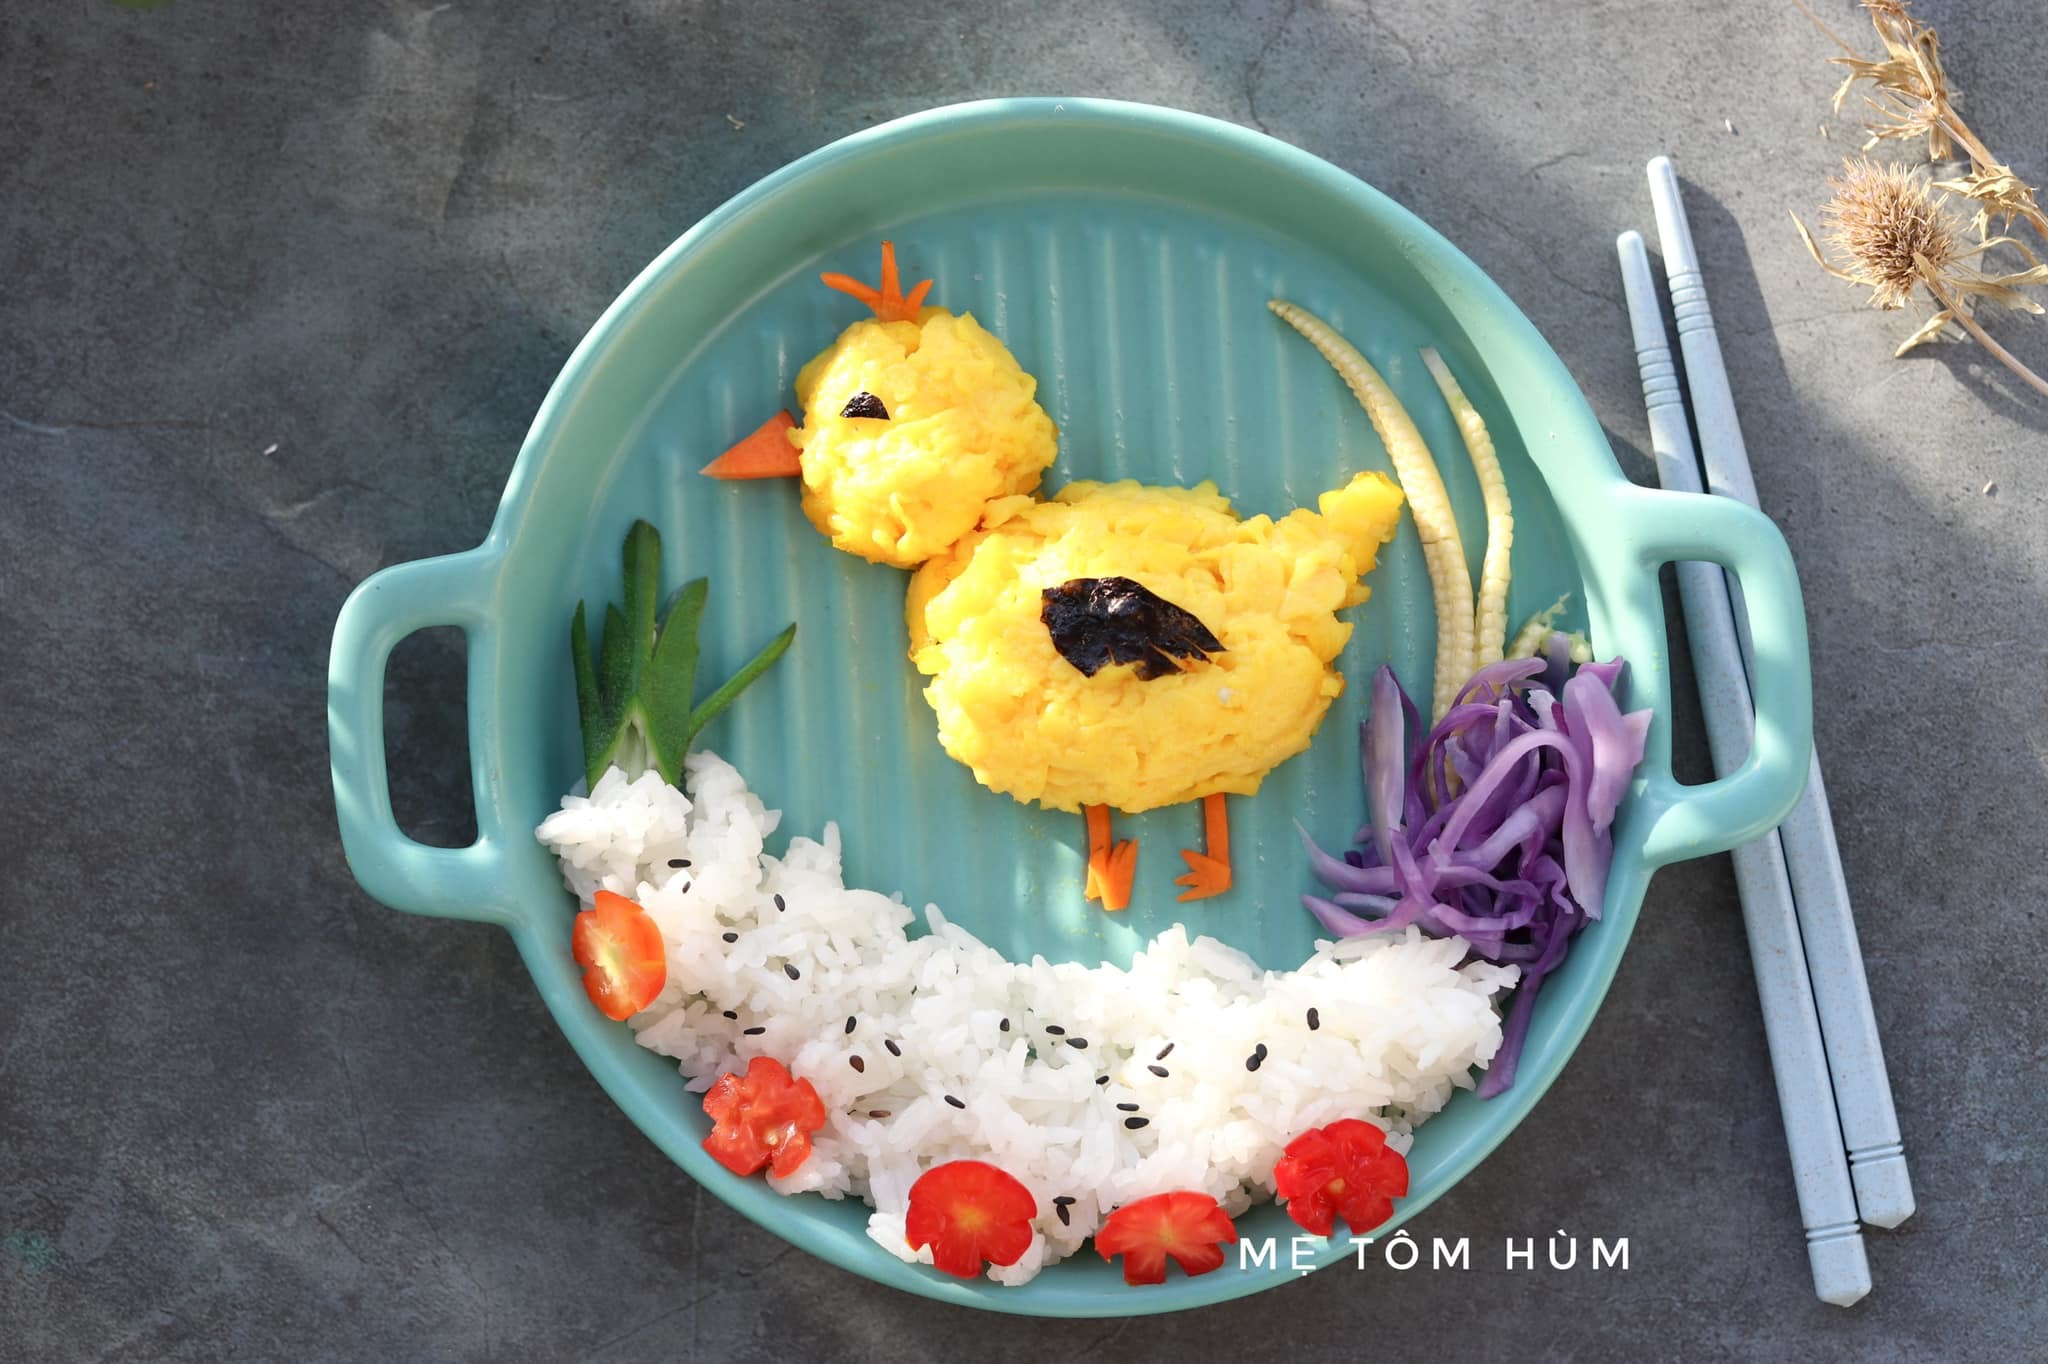 Mẹ đơn thân Hà Nội tạo hình bữa ăn cho con đẹp như tranh vẽ